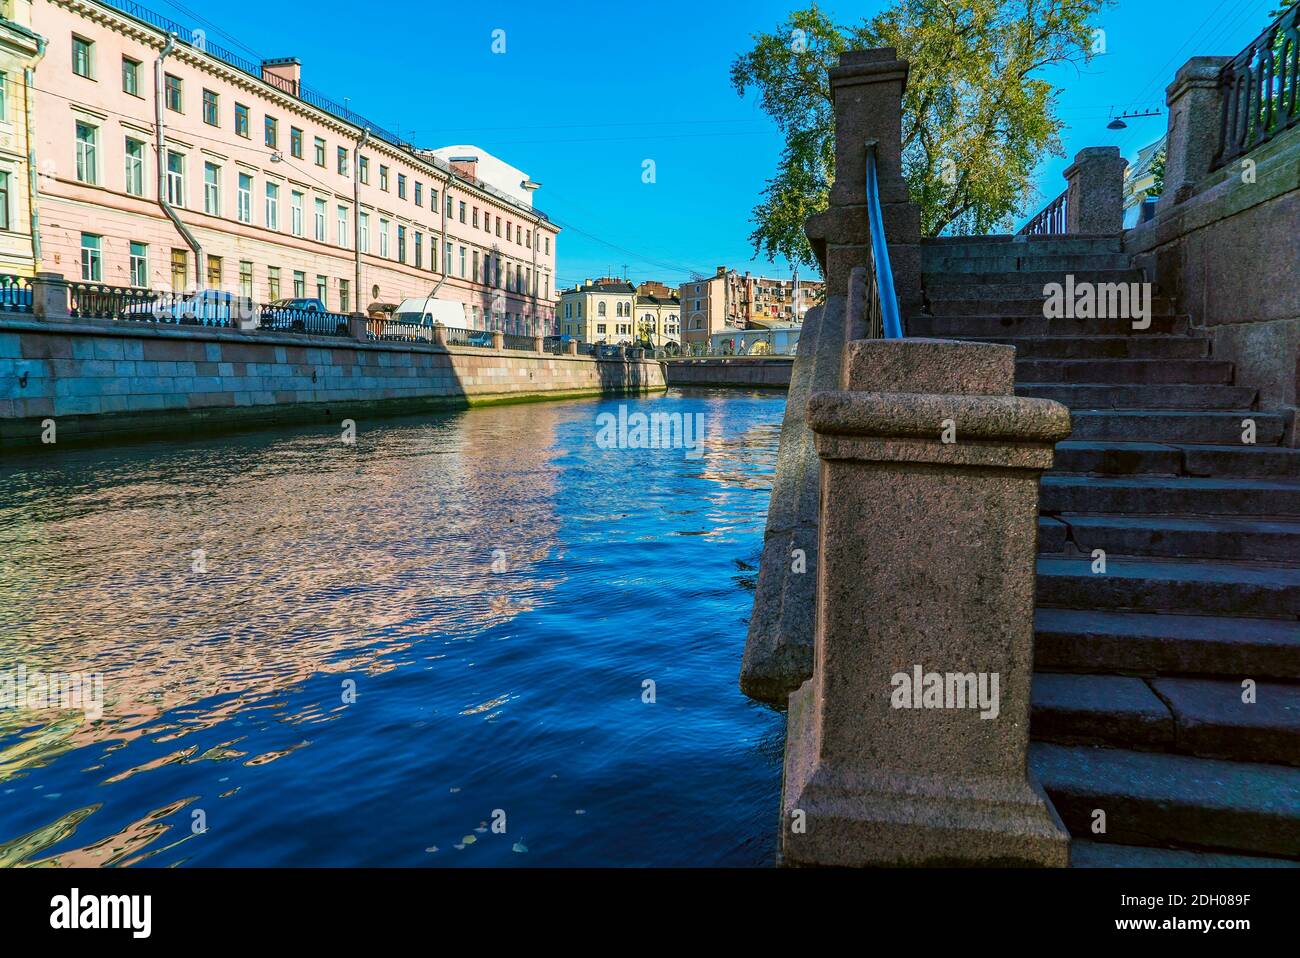 Vue sur le pont Bank avec des griffins à travers le canal Griboyedov, Saint-Pétersbourg, Russie Banque D'Images